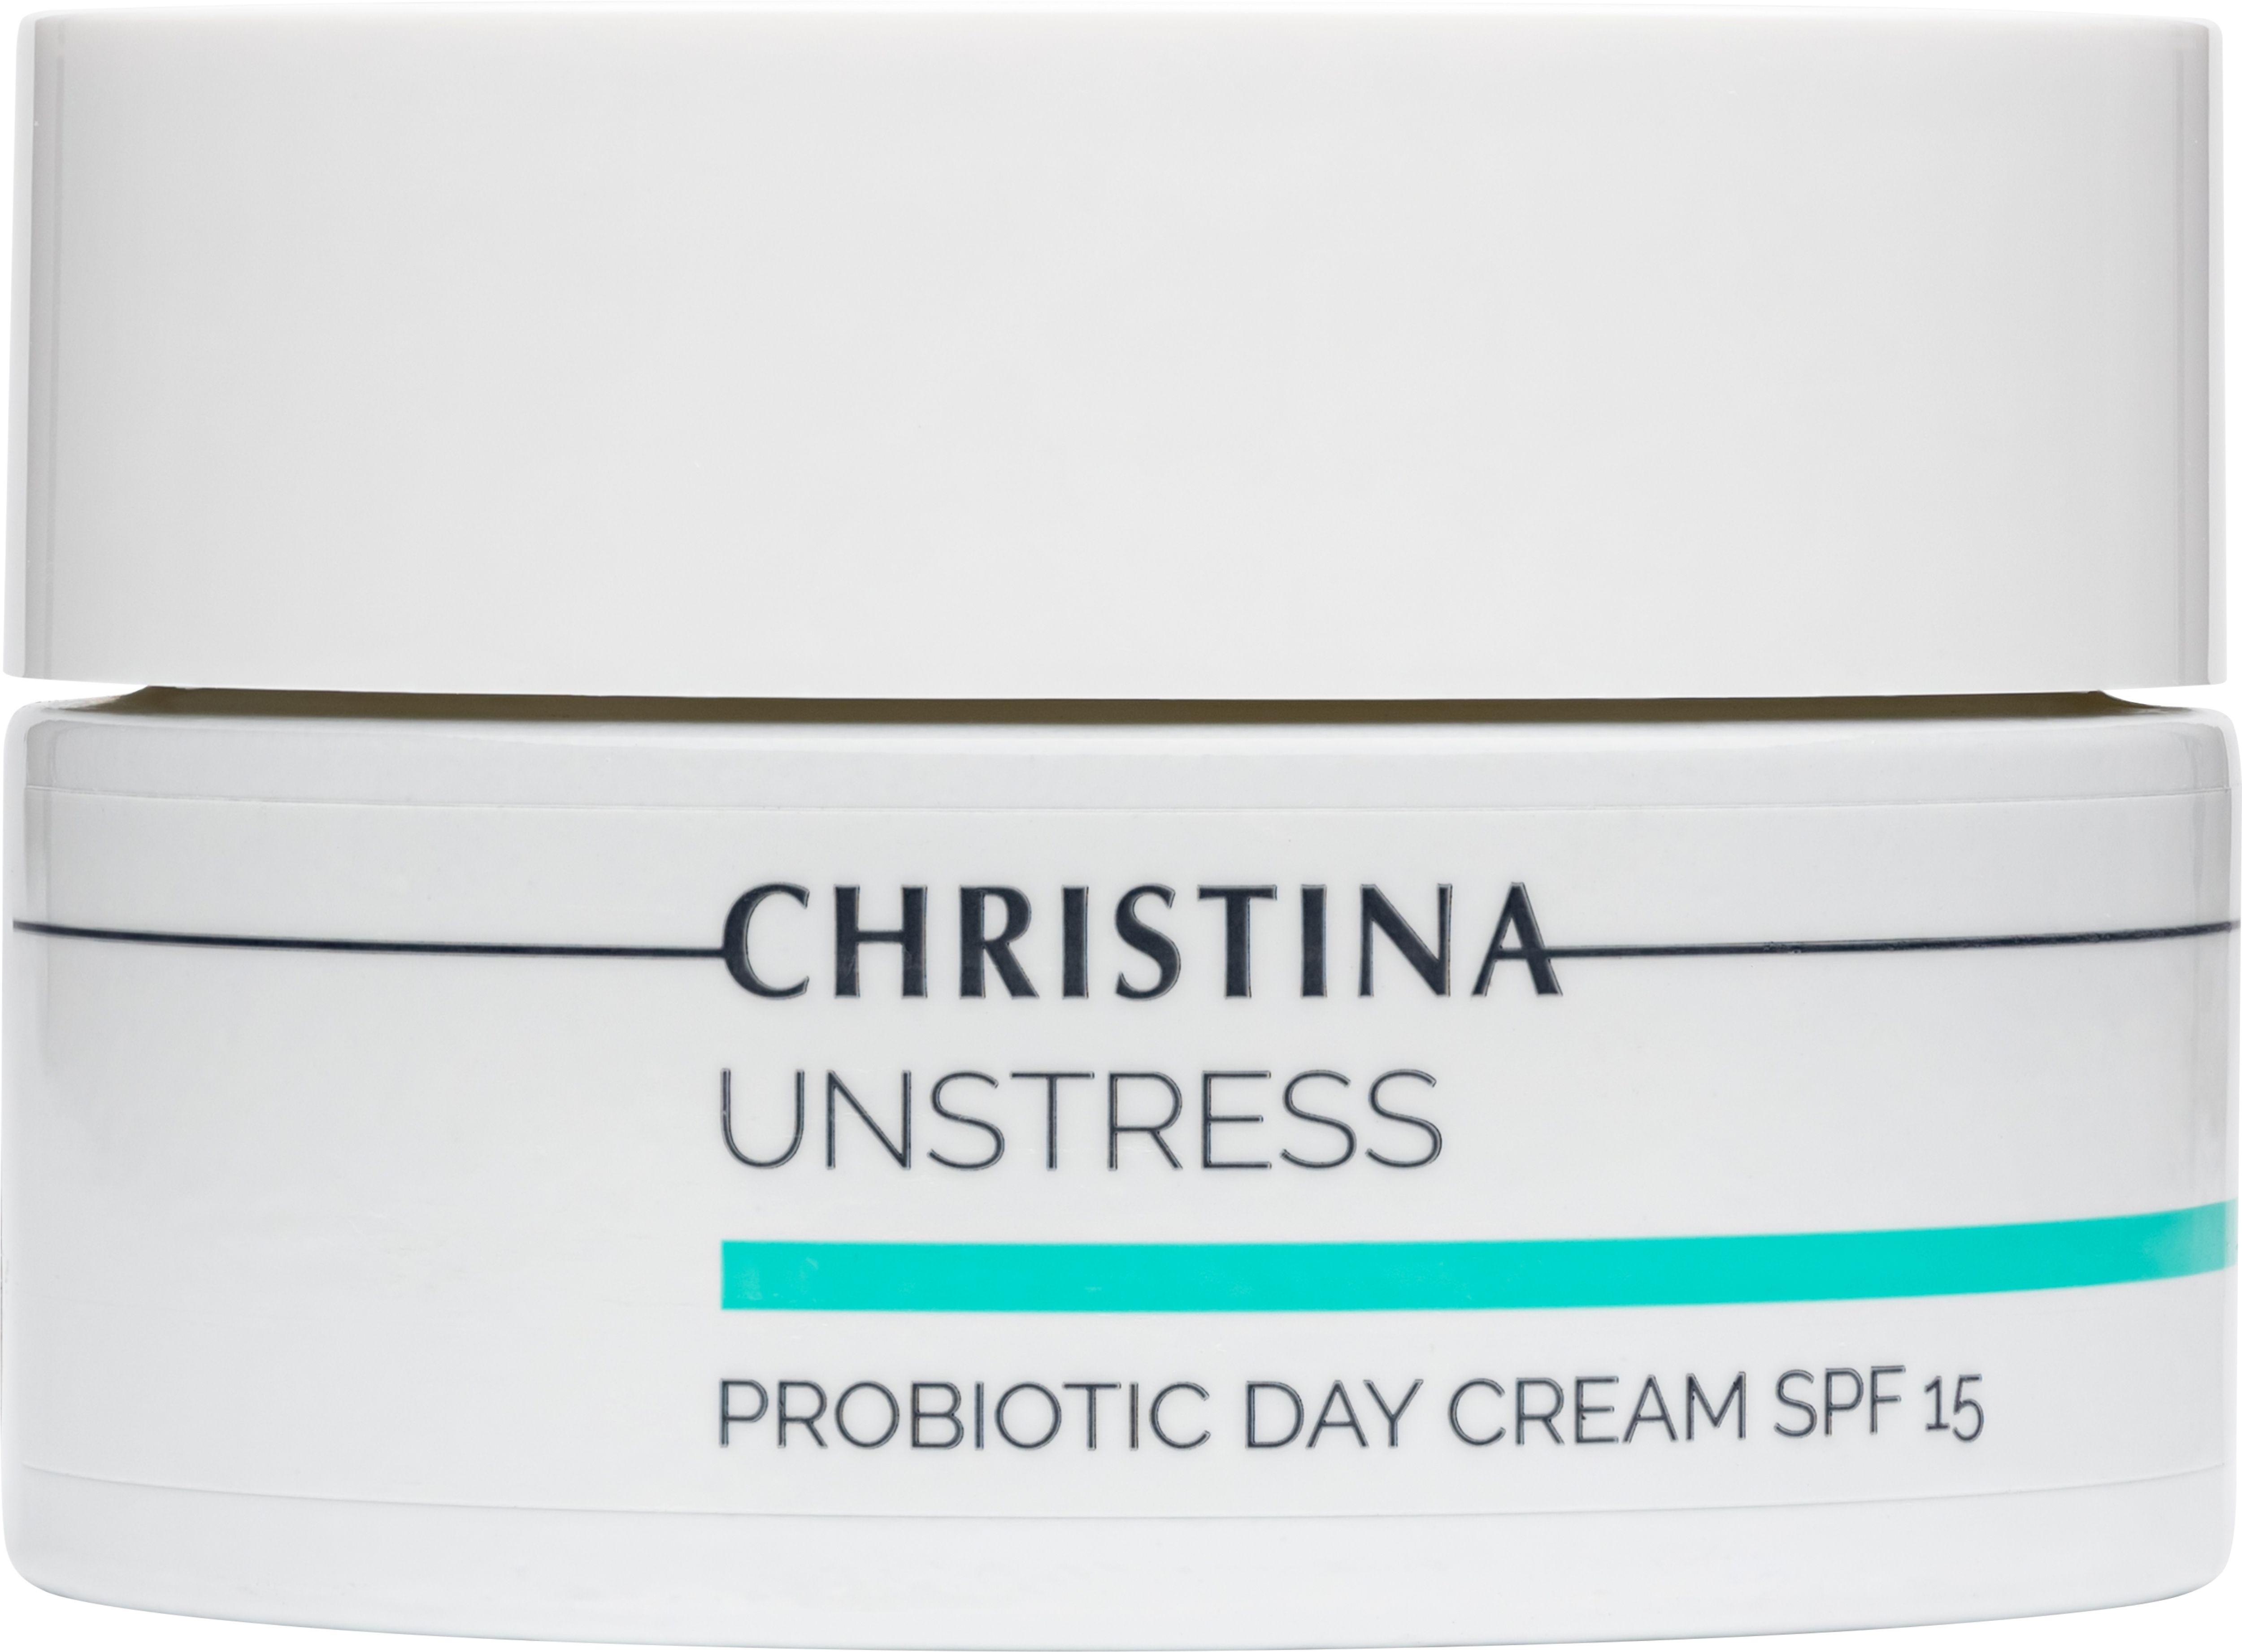 Подарочный набор Christina Unstress: Очищающий мусс 200 мл + Тоник 300 мл + Успокаивающая сыворотка 30 мл + Защитный крем SPF 15 50 мл - фото 5